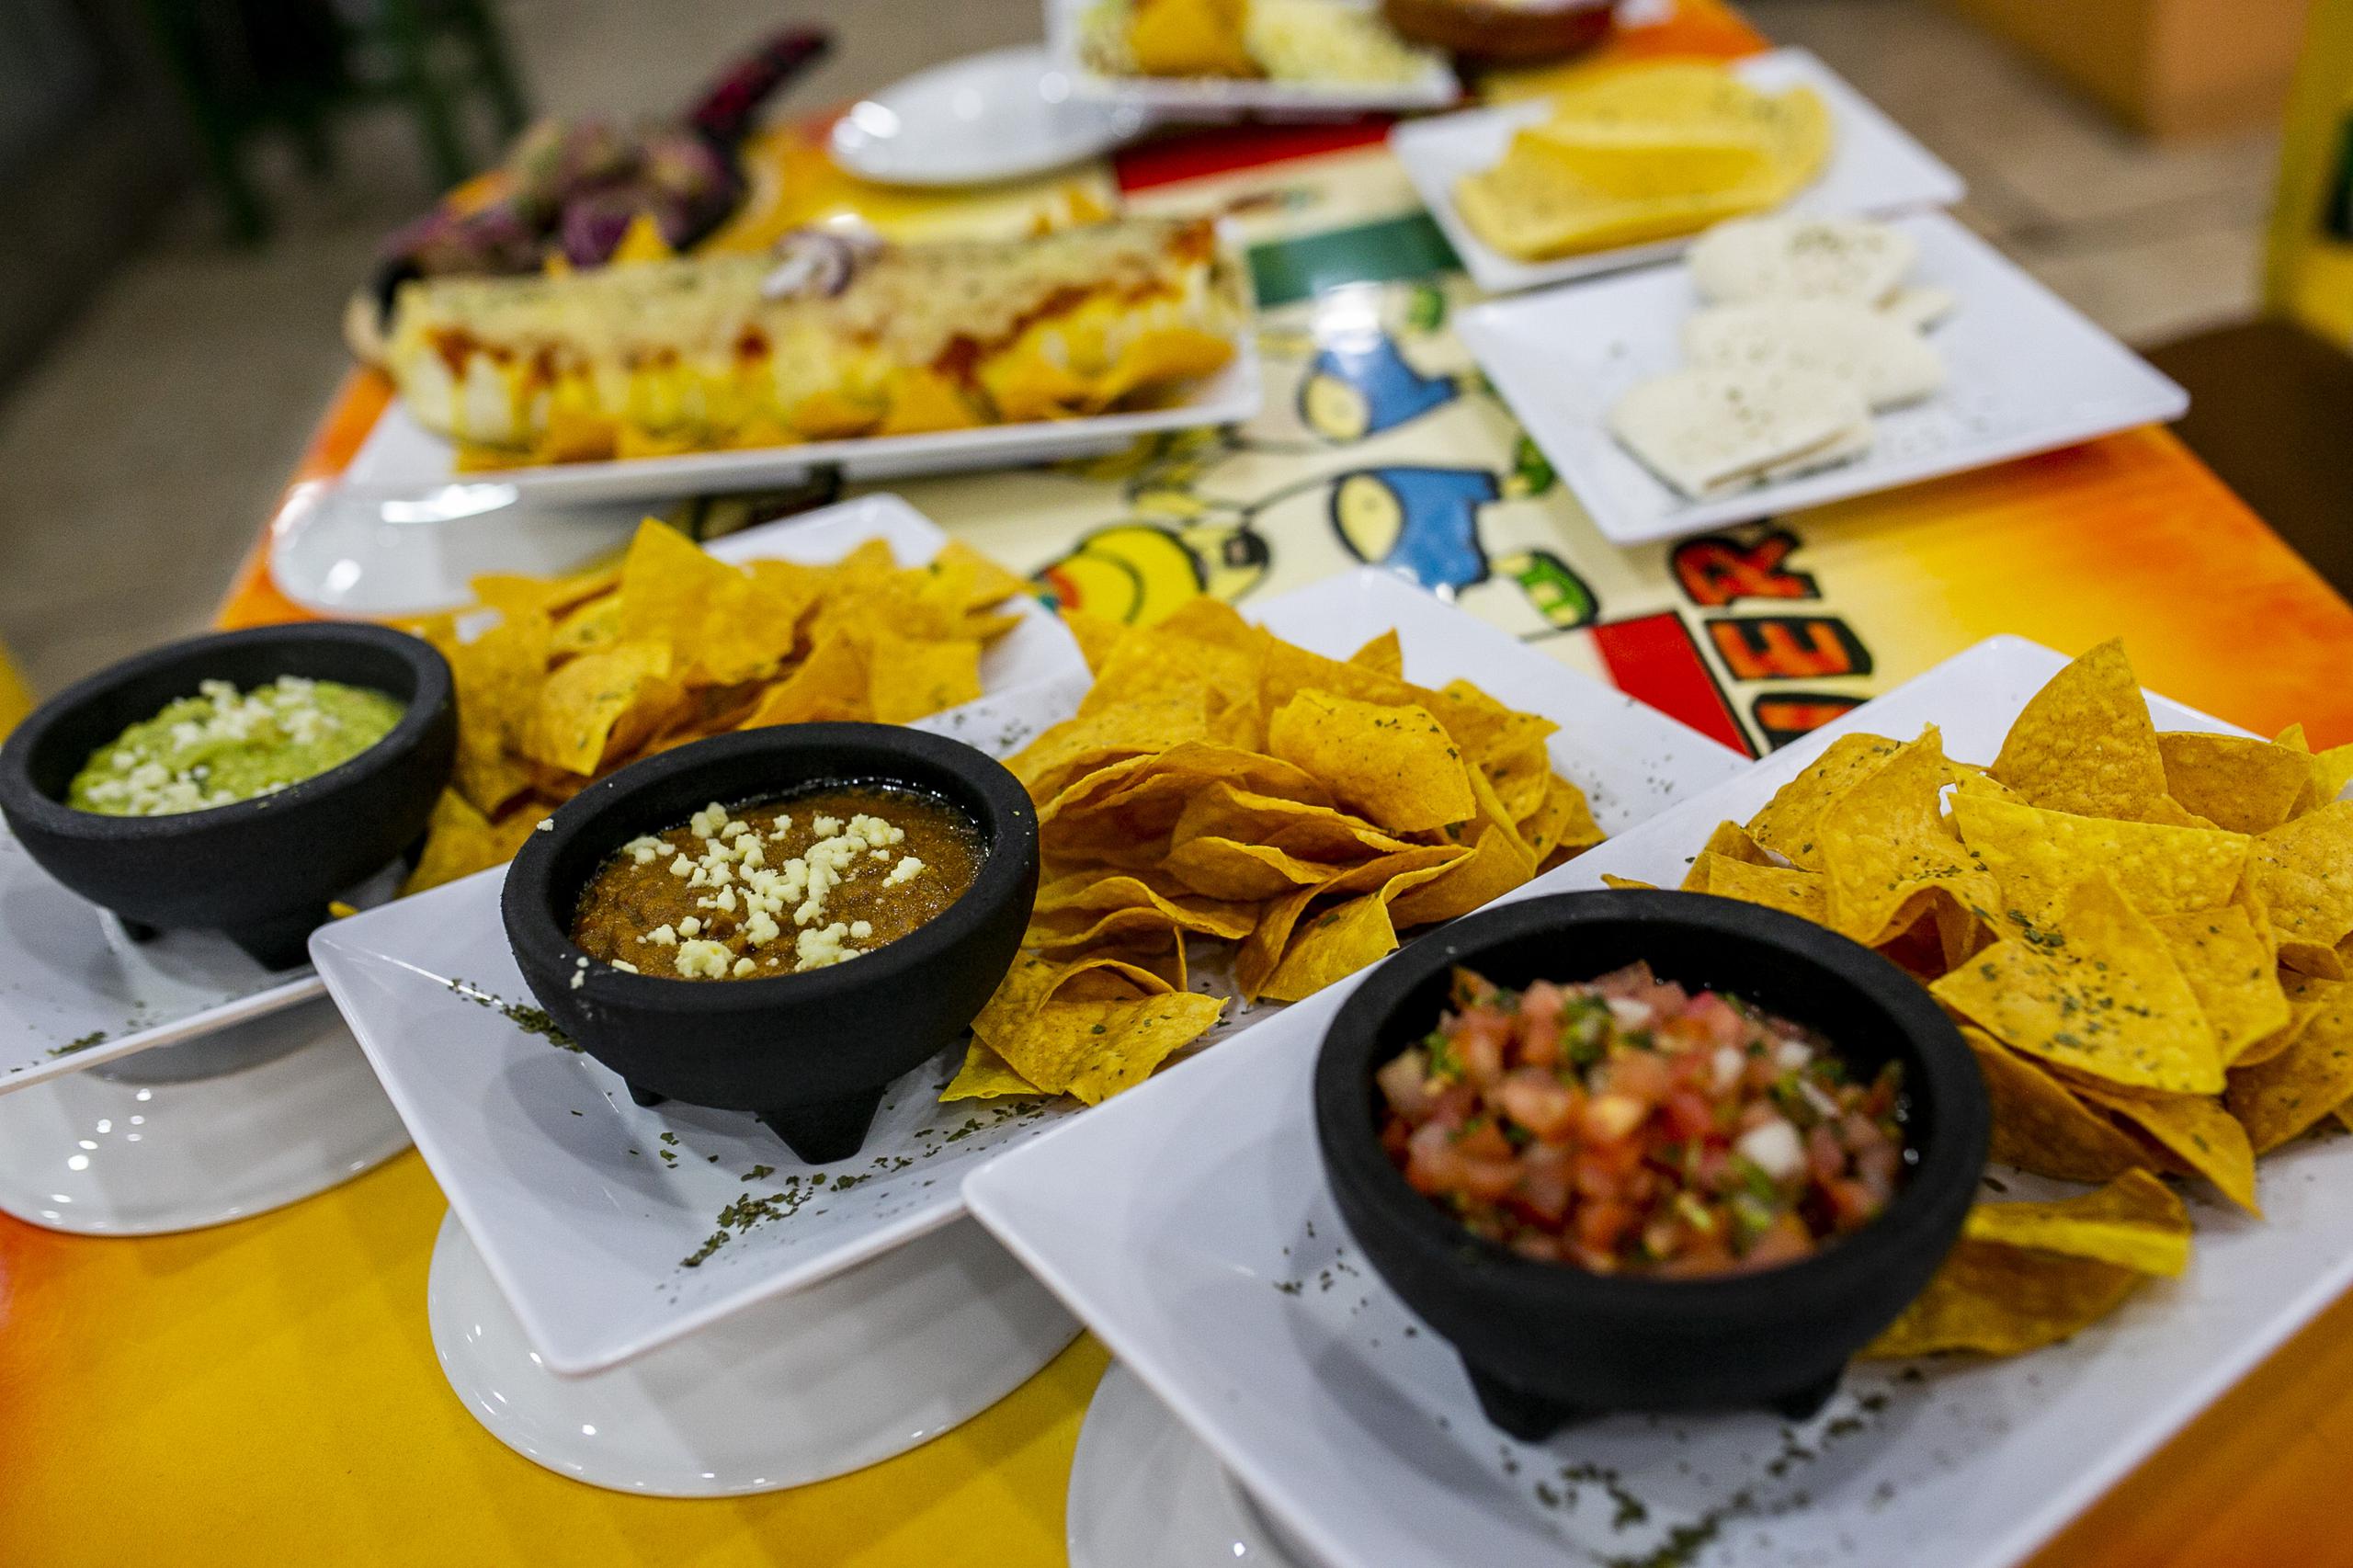 Burrito de carne frita (al fondo) y nachos con guacamole, refritos y pico de gallo; algunas de las delicias tex mex del establecimiento.  